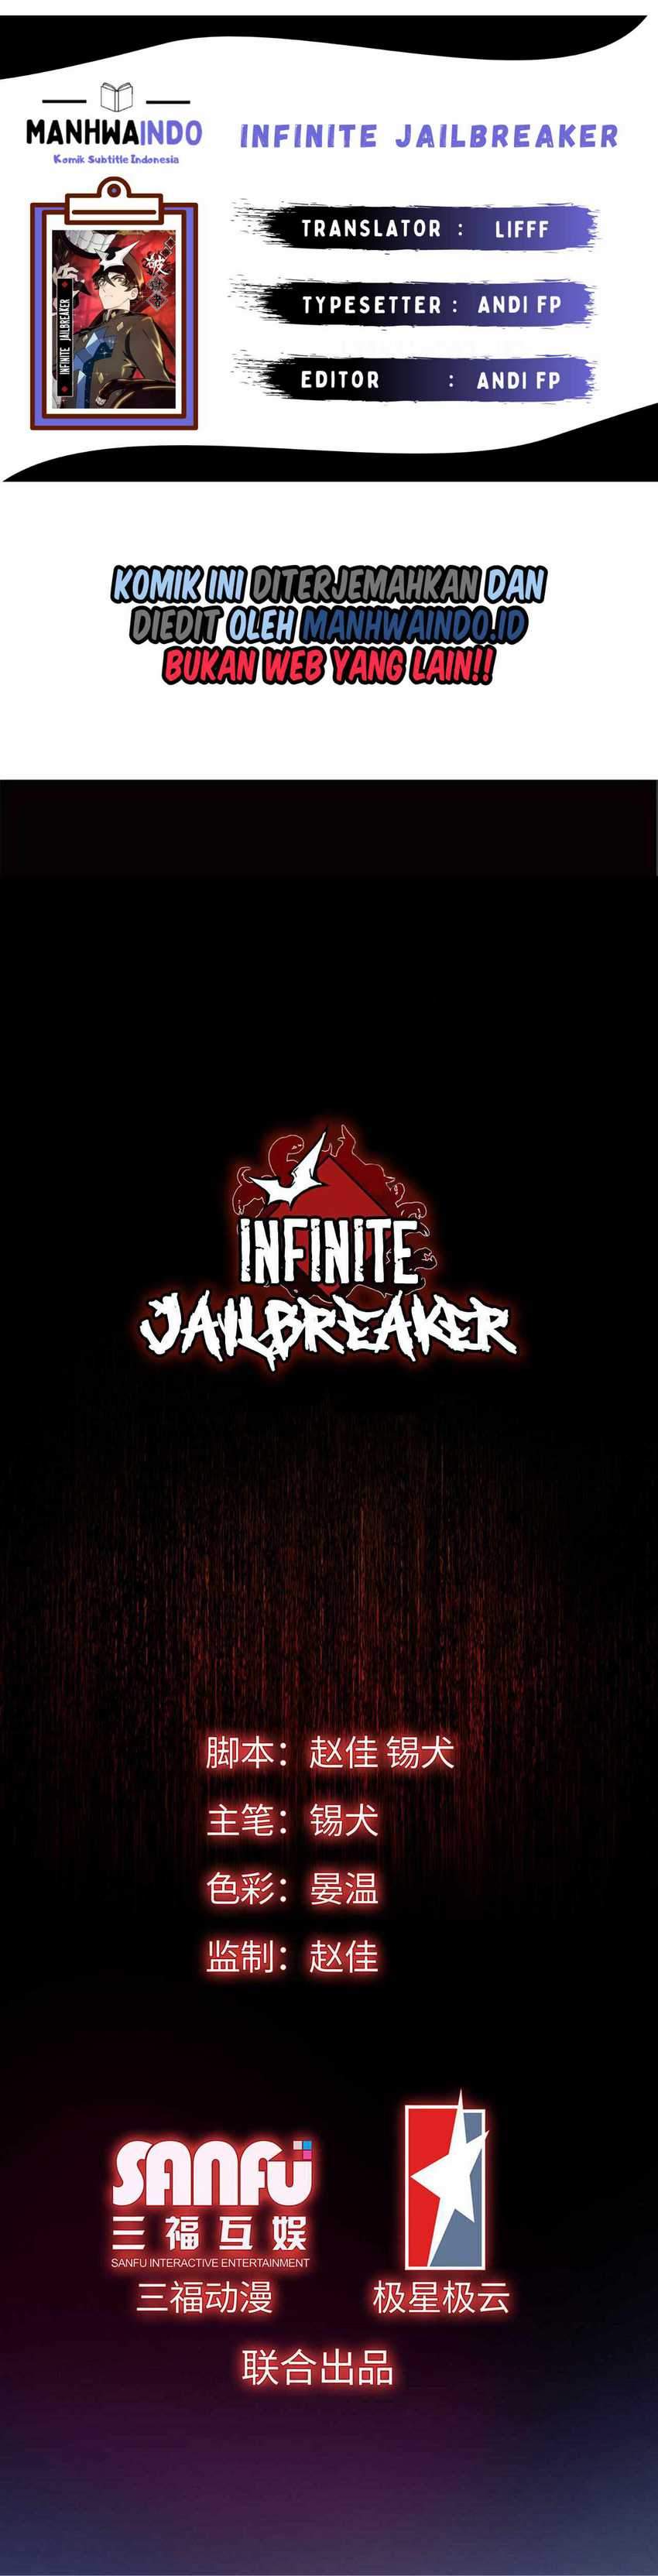 Infinite Jailbreaker Chapter 3